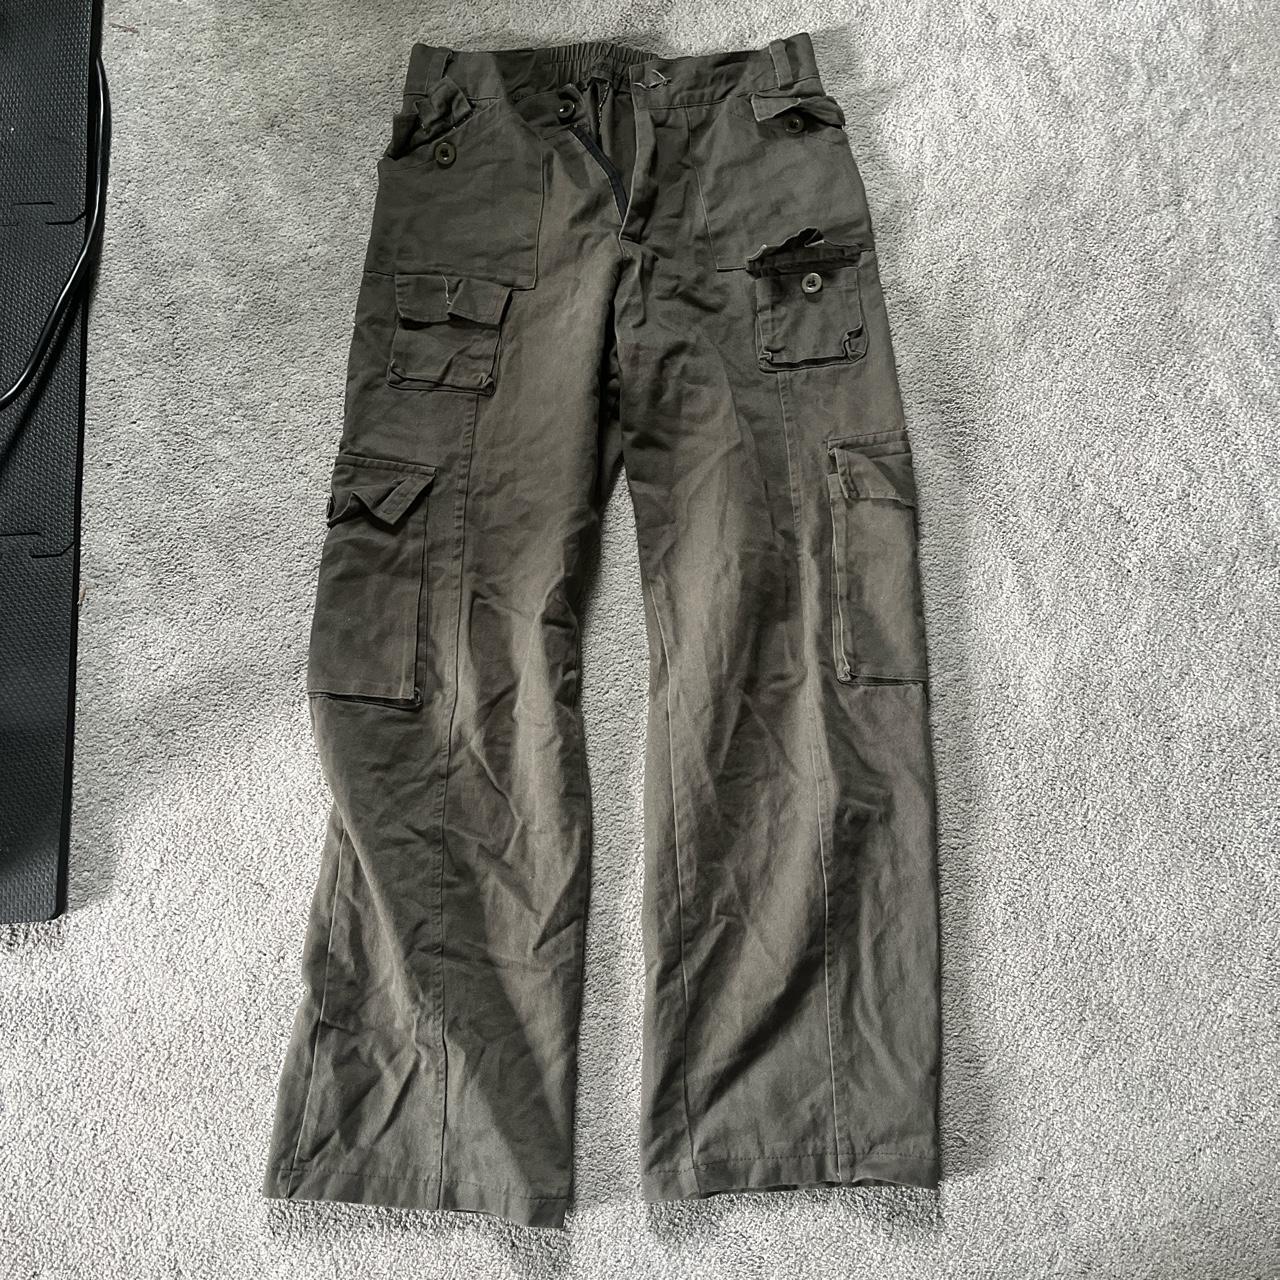 Grey/Green Retro Cargo Pants#N##N#Pretty simple pair of... - Depop